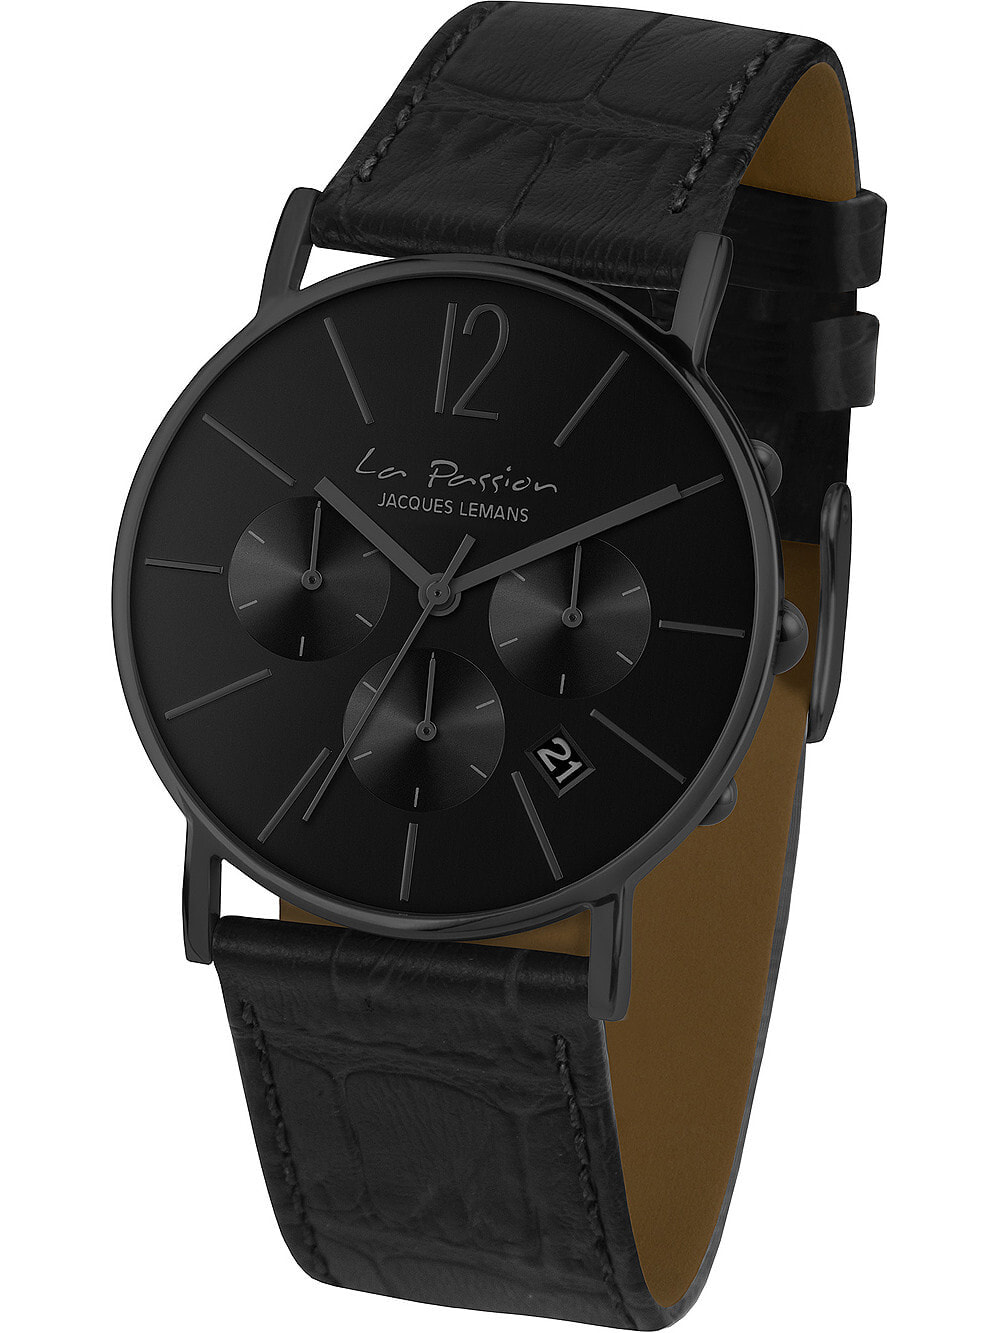 Женские наручные кварцевые часы Jacques Lemans хронограф, окошко с датой, кожаный ремешок.